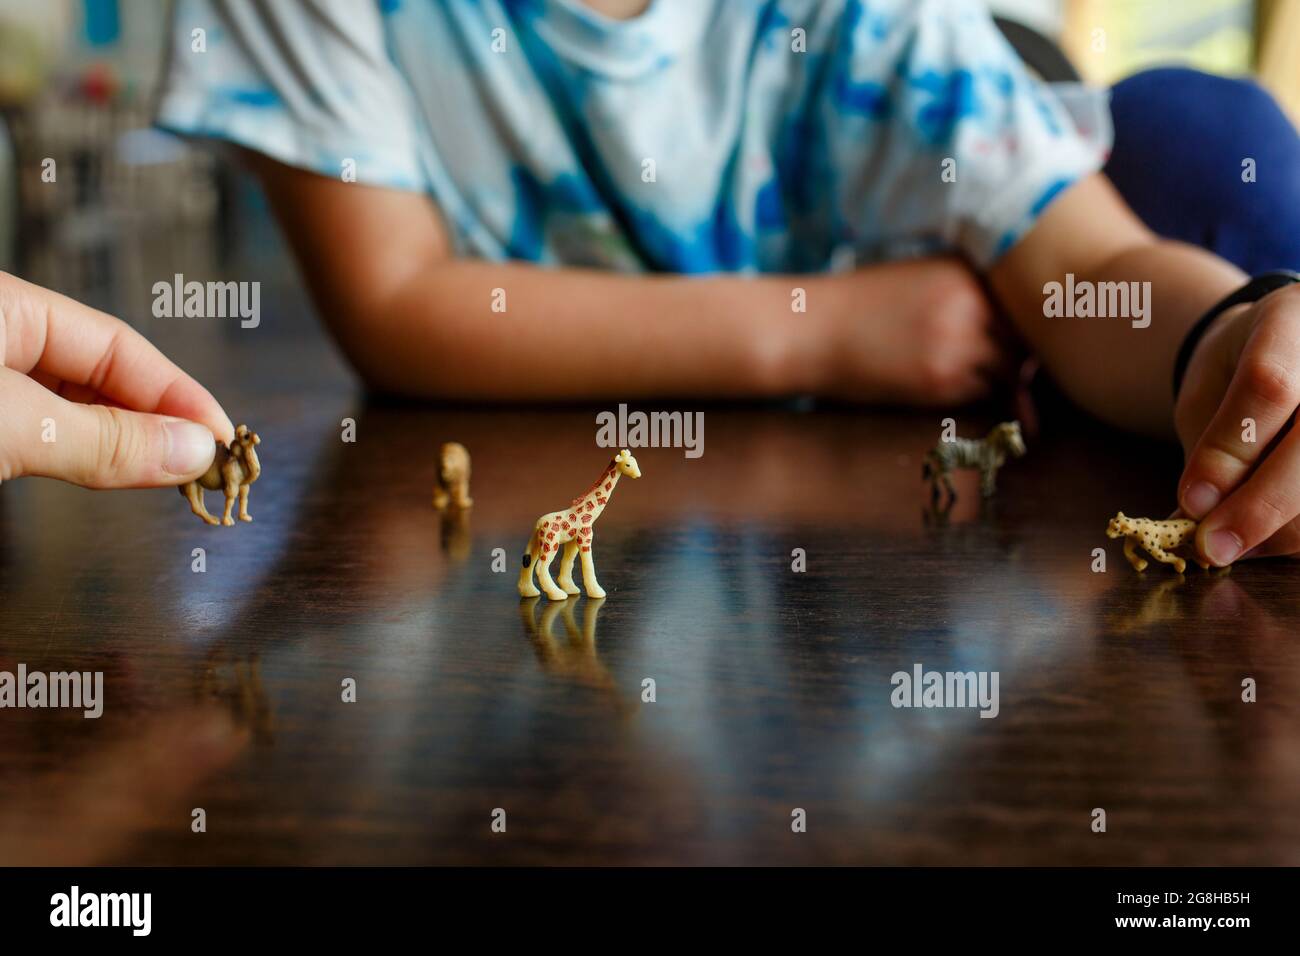 deux enfants jouent avec des animaux miniatures sur la table Banque D'Images